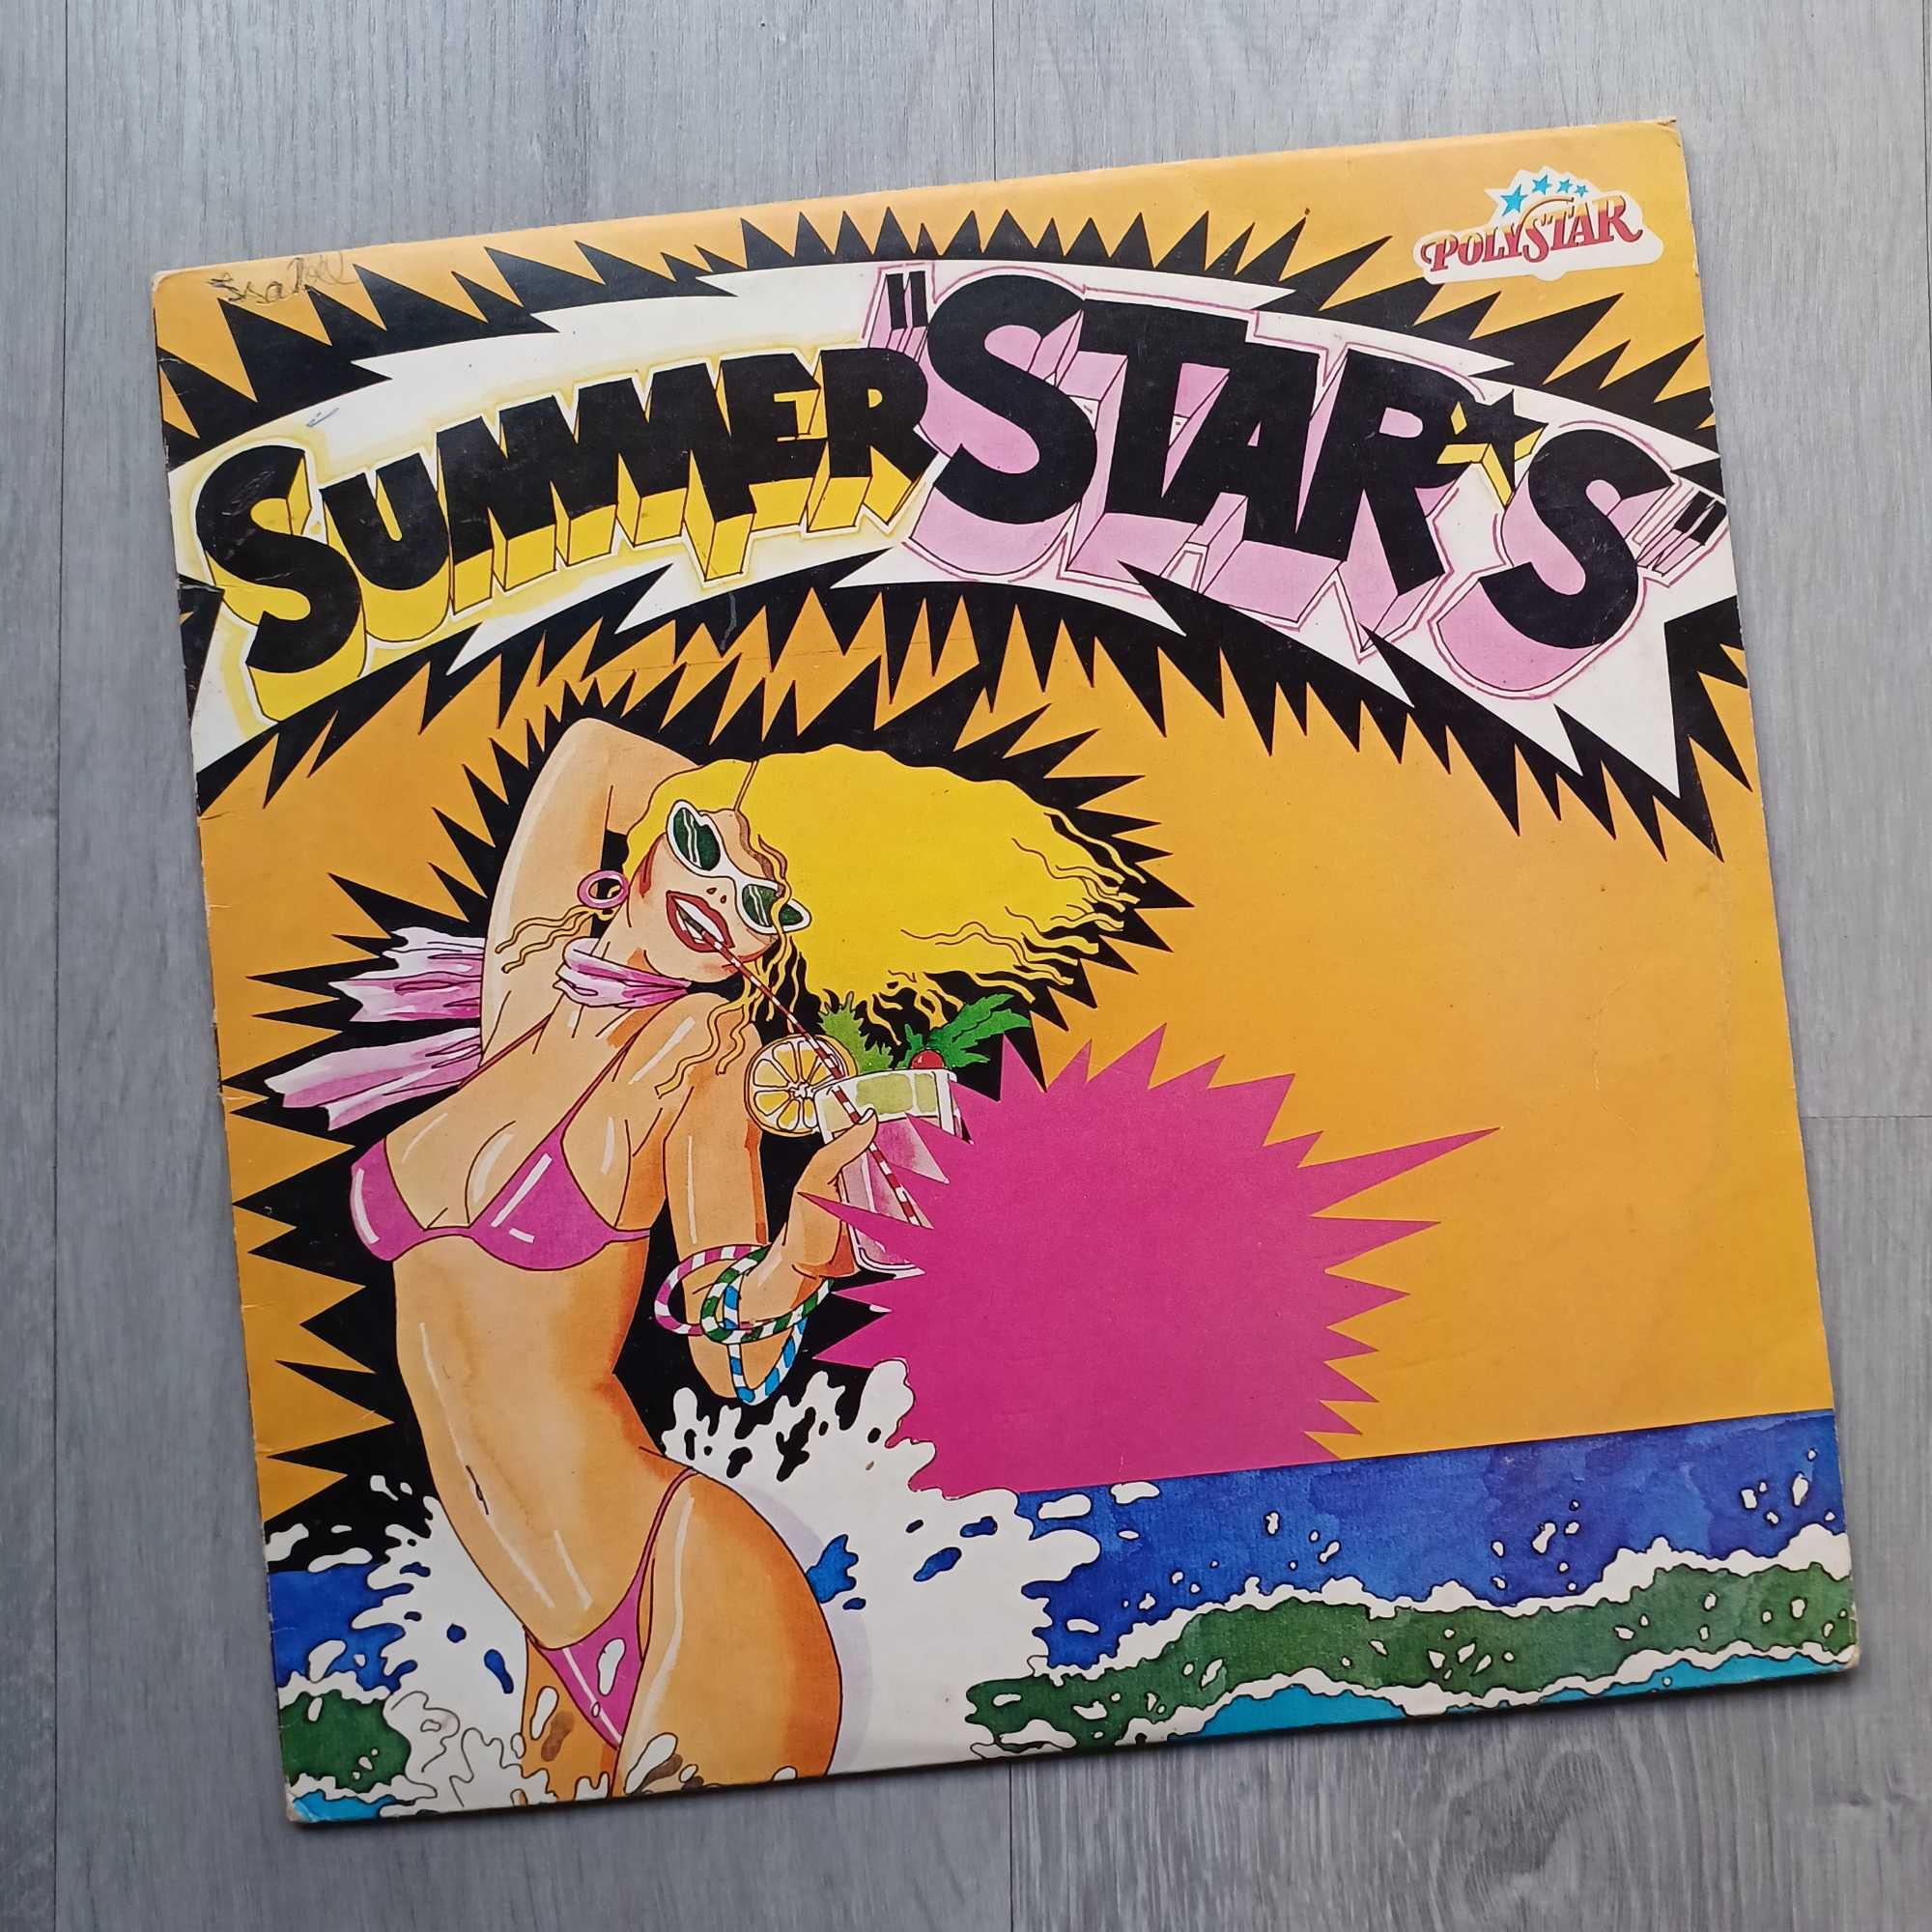 Summer "Stars" 1982 LP Portugal Táxi Doce Heróis do Mar